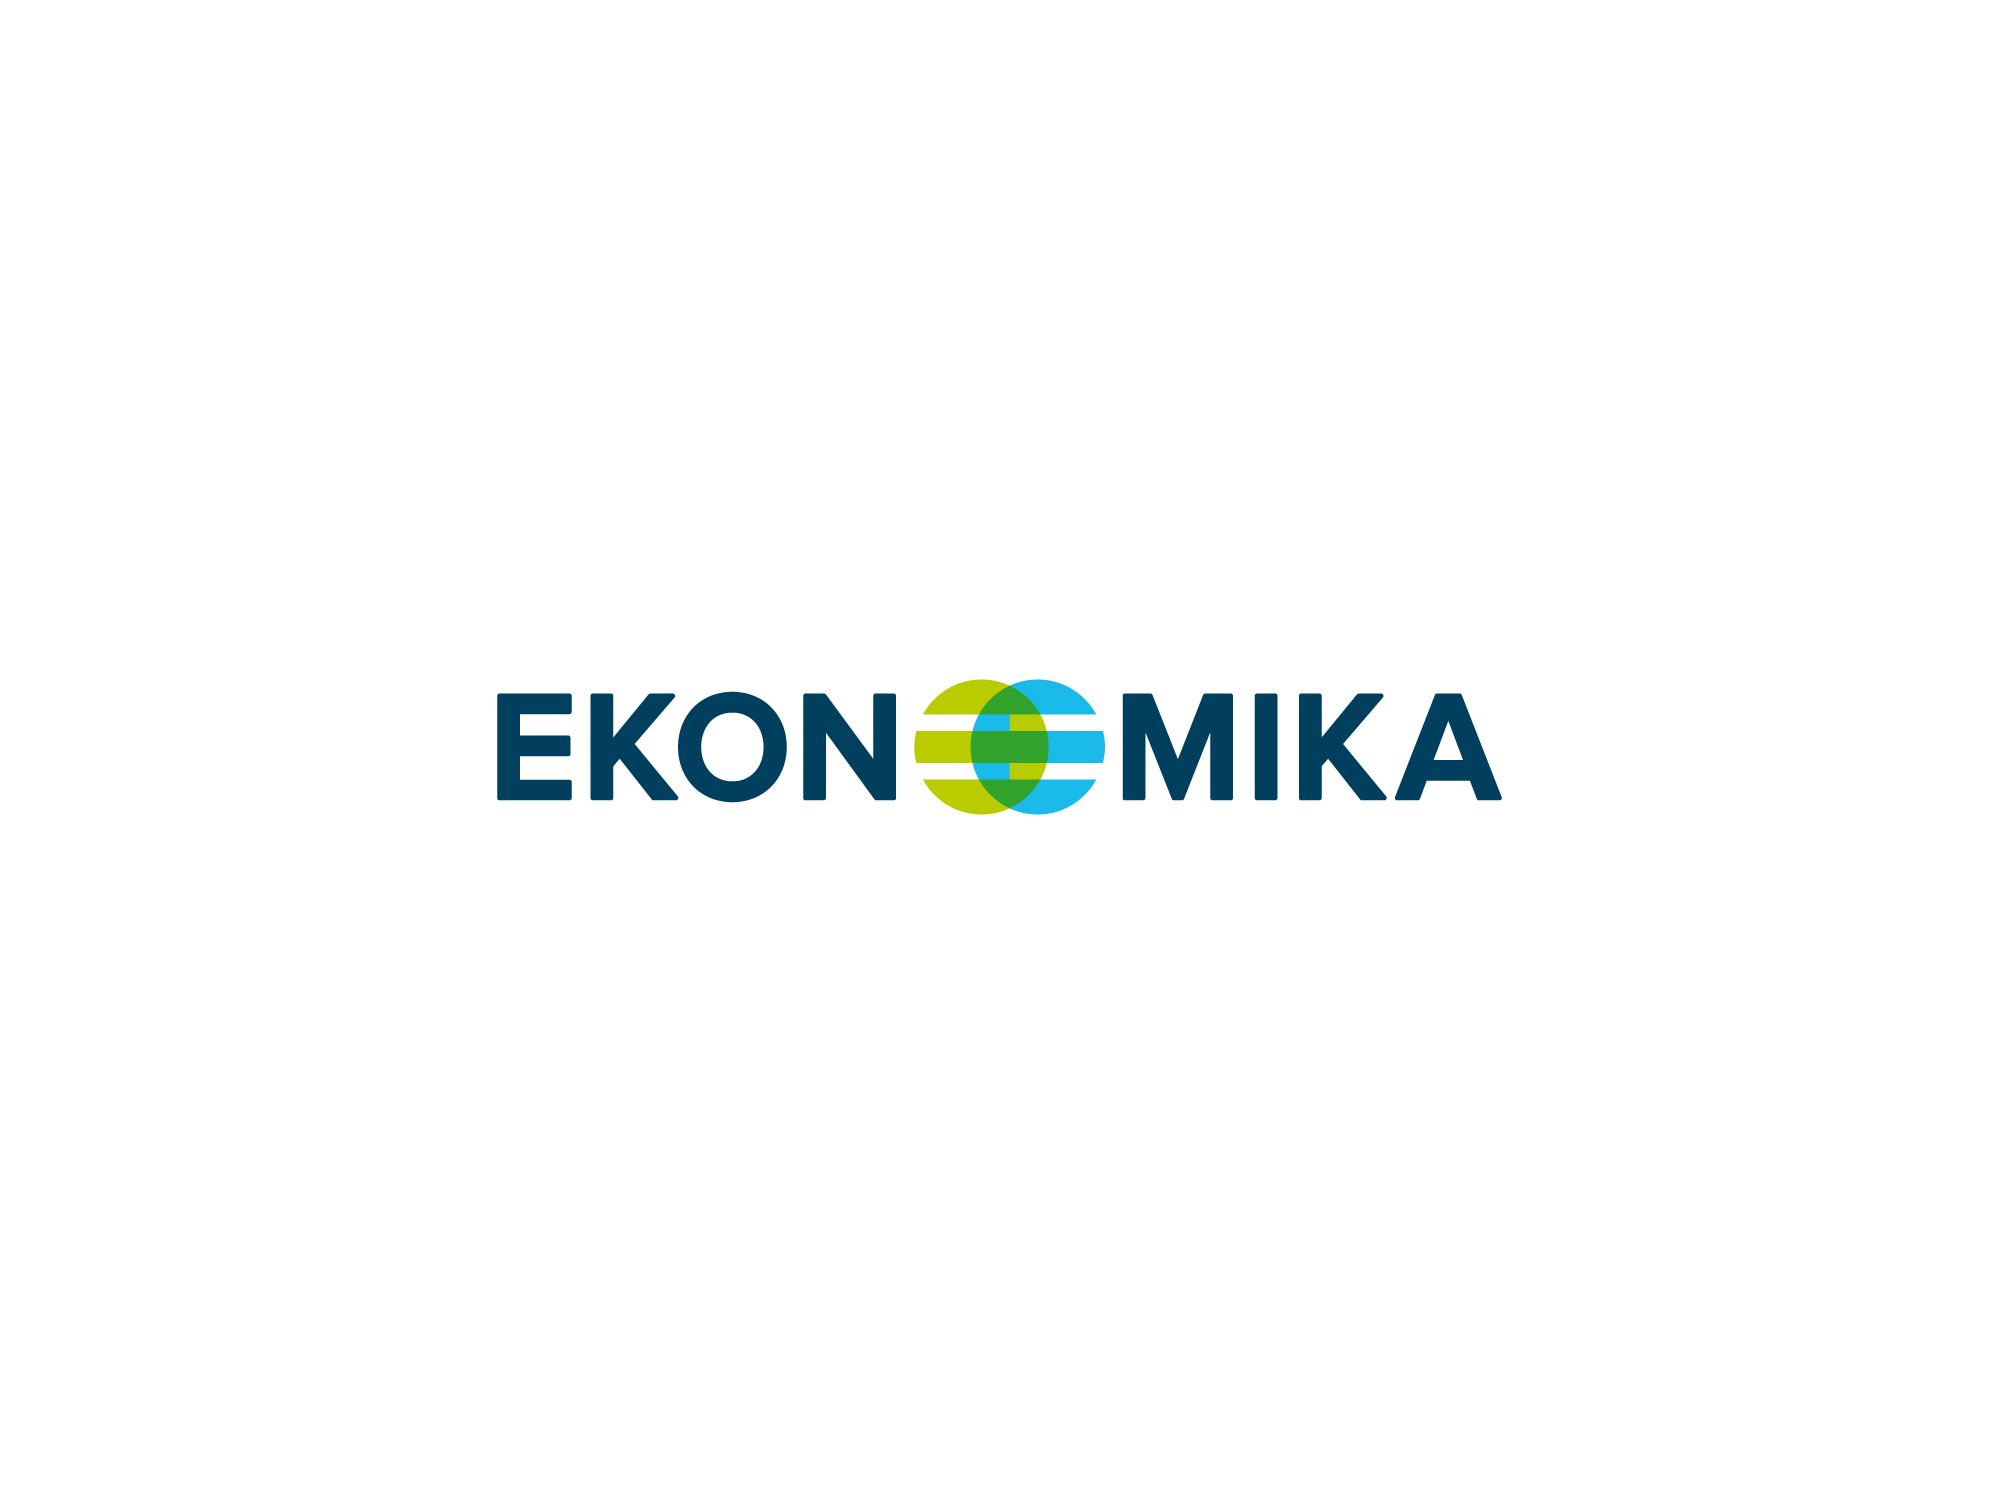 Логотип для энергосберигающих технологий Ekonomka - дизайнер shamaevserg